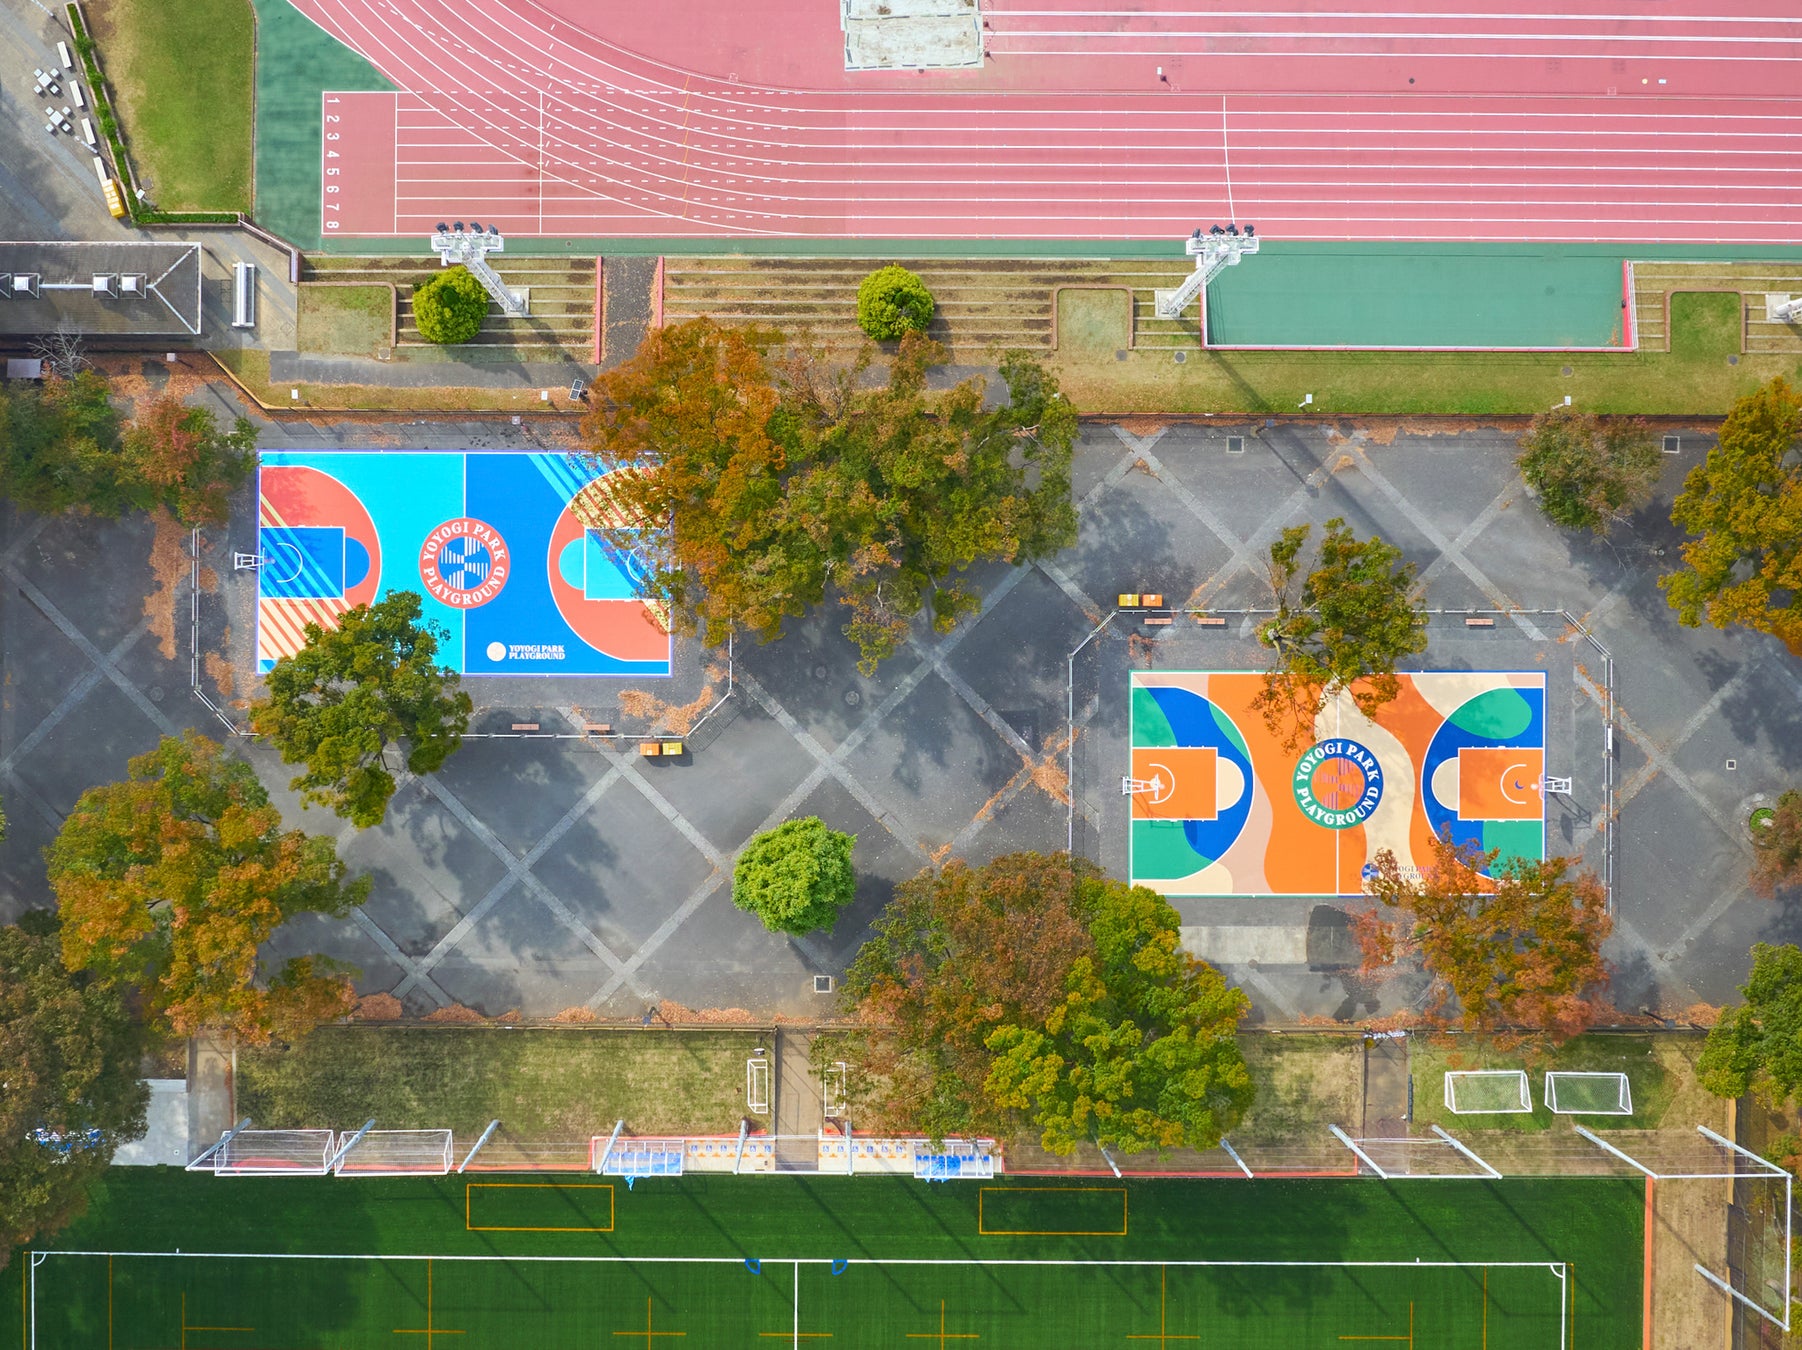 一般社団法人ピックアッププレイグラウンド、石川県内灘町のバスケットコートをクラウドファンディングでリニューアルするプロジェクトを開始